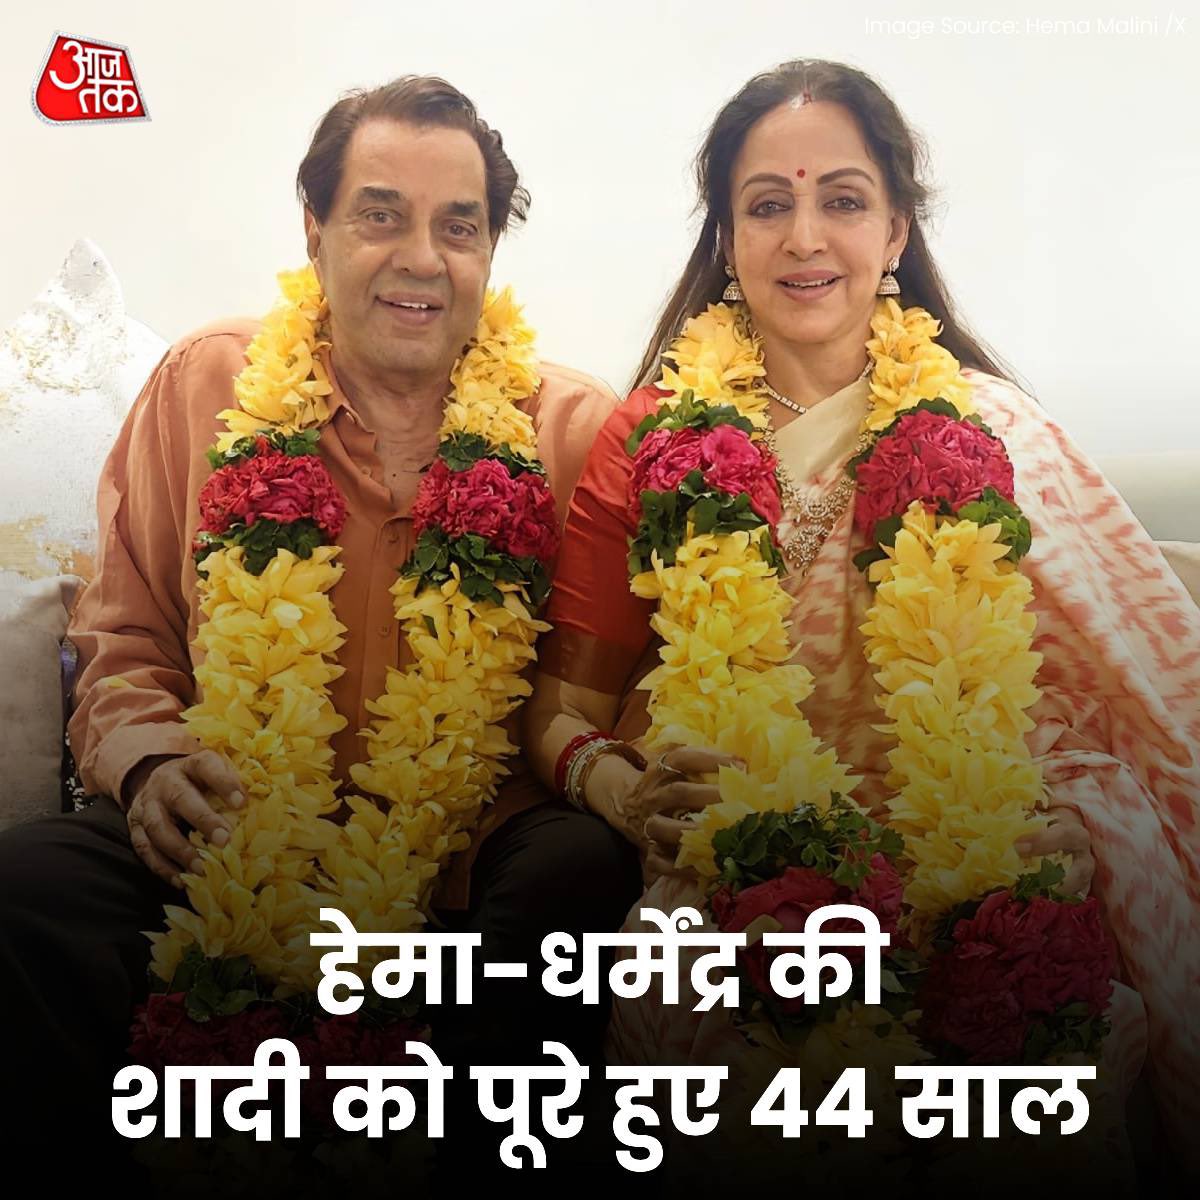 Wishing a very happy 44th anniversary to Mr. Dharmendra Sir and Mrs. Hema Malini
#Dharmendra #HemaMalini #WeddingAnniversary! #SunnyDeol #BobbyDeol #anniversary